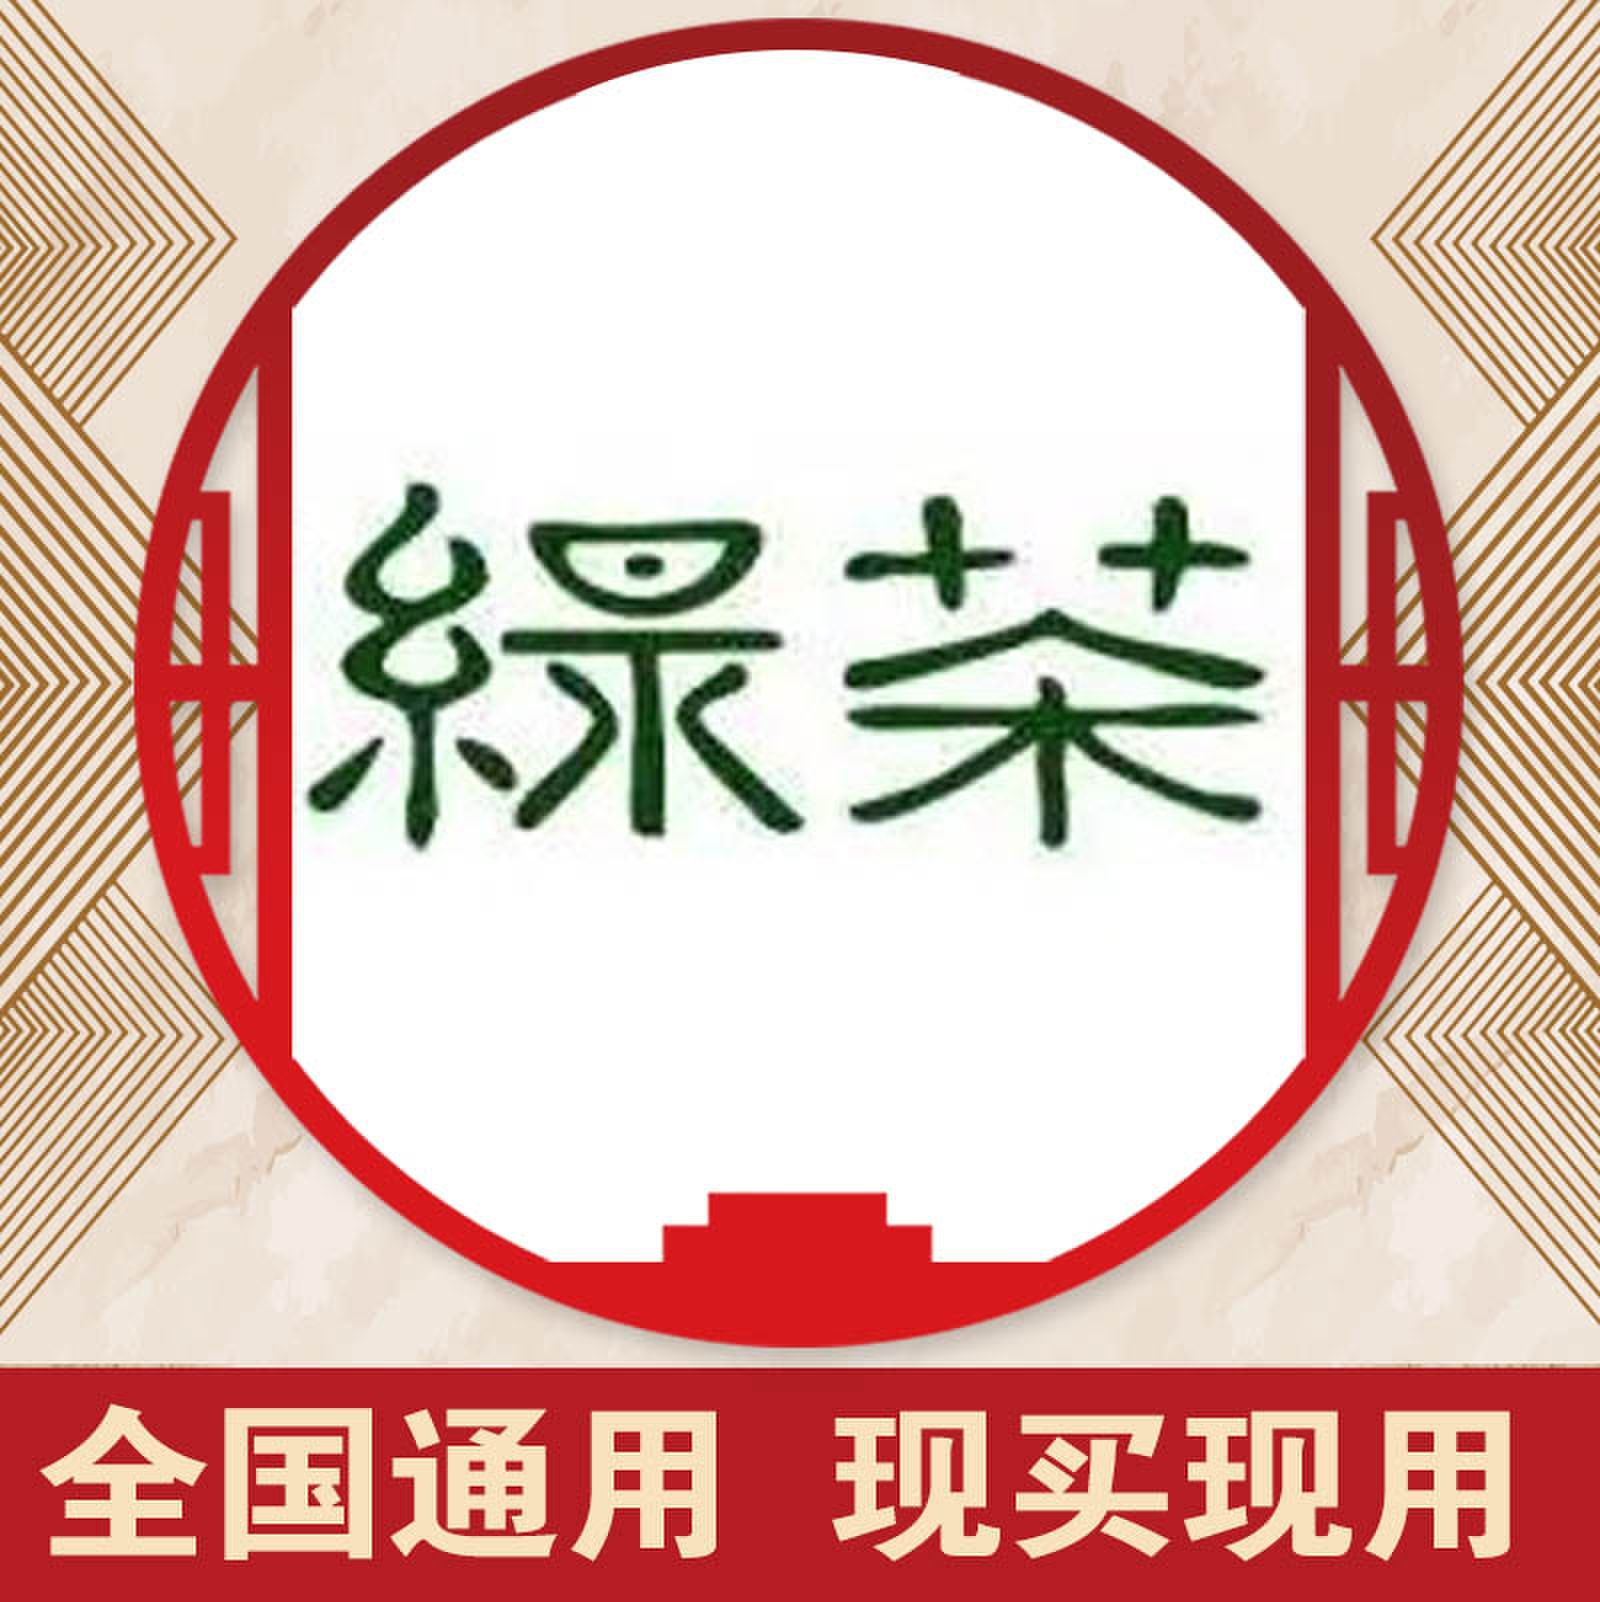 全国北京绿茶餐厅100元电子优惠代金券折扣下单前私信客服再拍